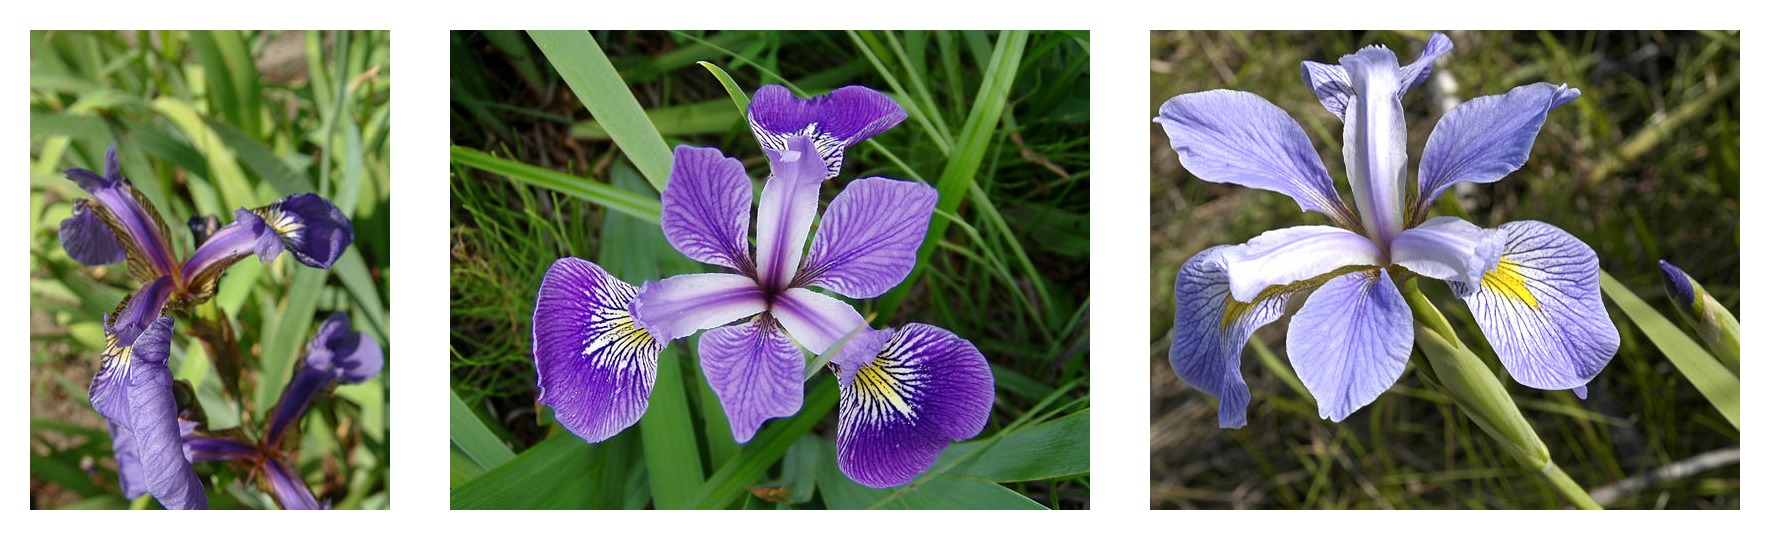 3 種のアヤメの花弁の形状の比較: Iris setosa、Iris virginica、および Iris versicolor